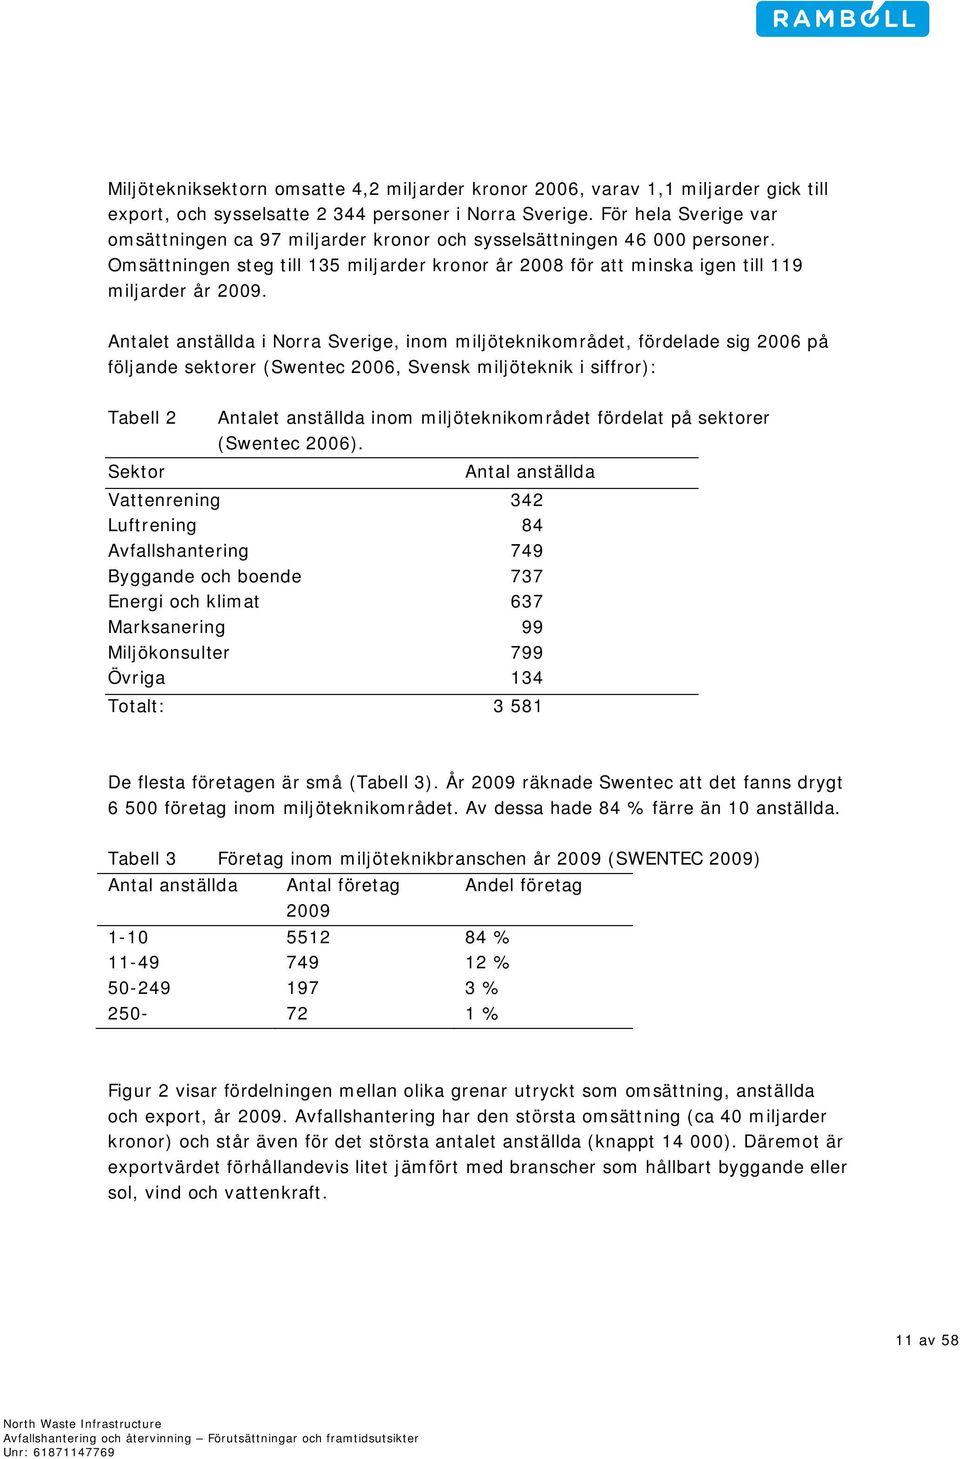 Antalet anställda i Norra Sverige, inom miljöteknikområdet, fördelade sig 2006 på följande sektorer (Swentec 2006, Svensk miljöteknik i siffror): Tabell 2 Sektor Antalet anställda inom